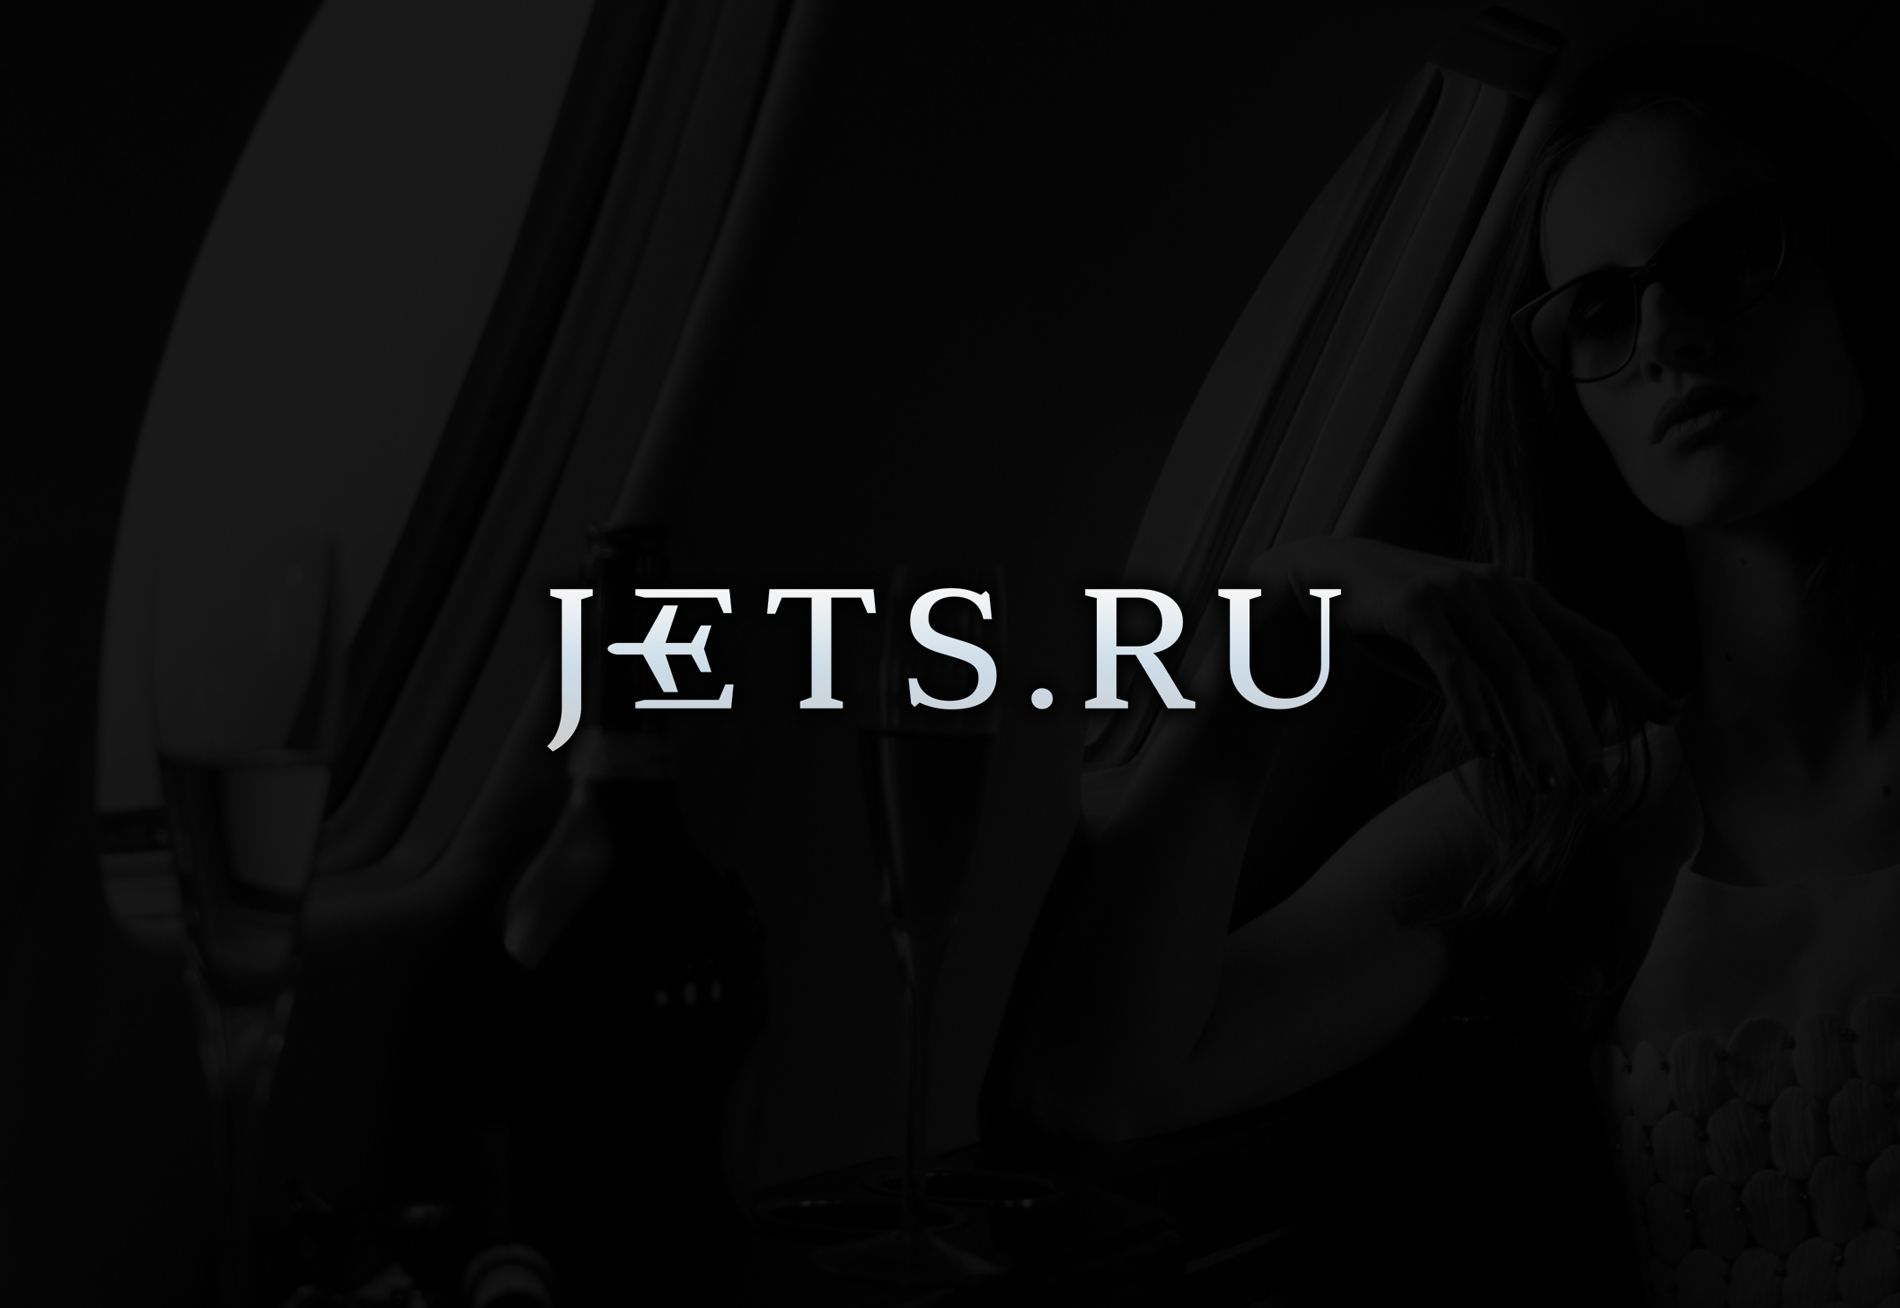 Логотип для jets.ru - дизайнер Alexey_SNG